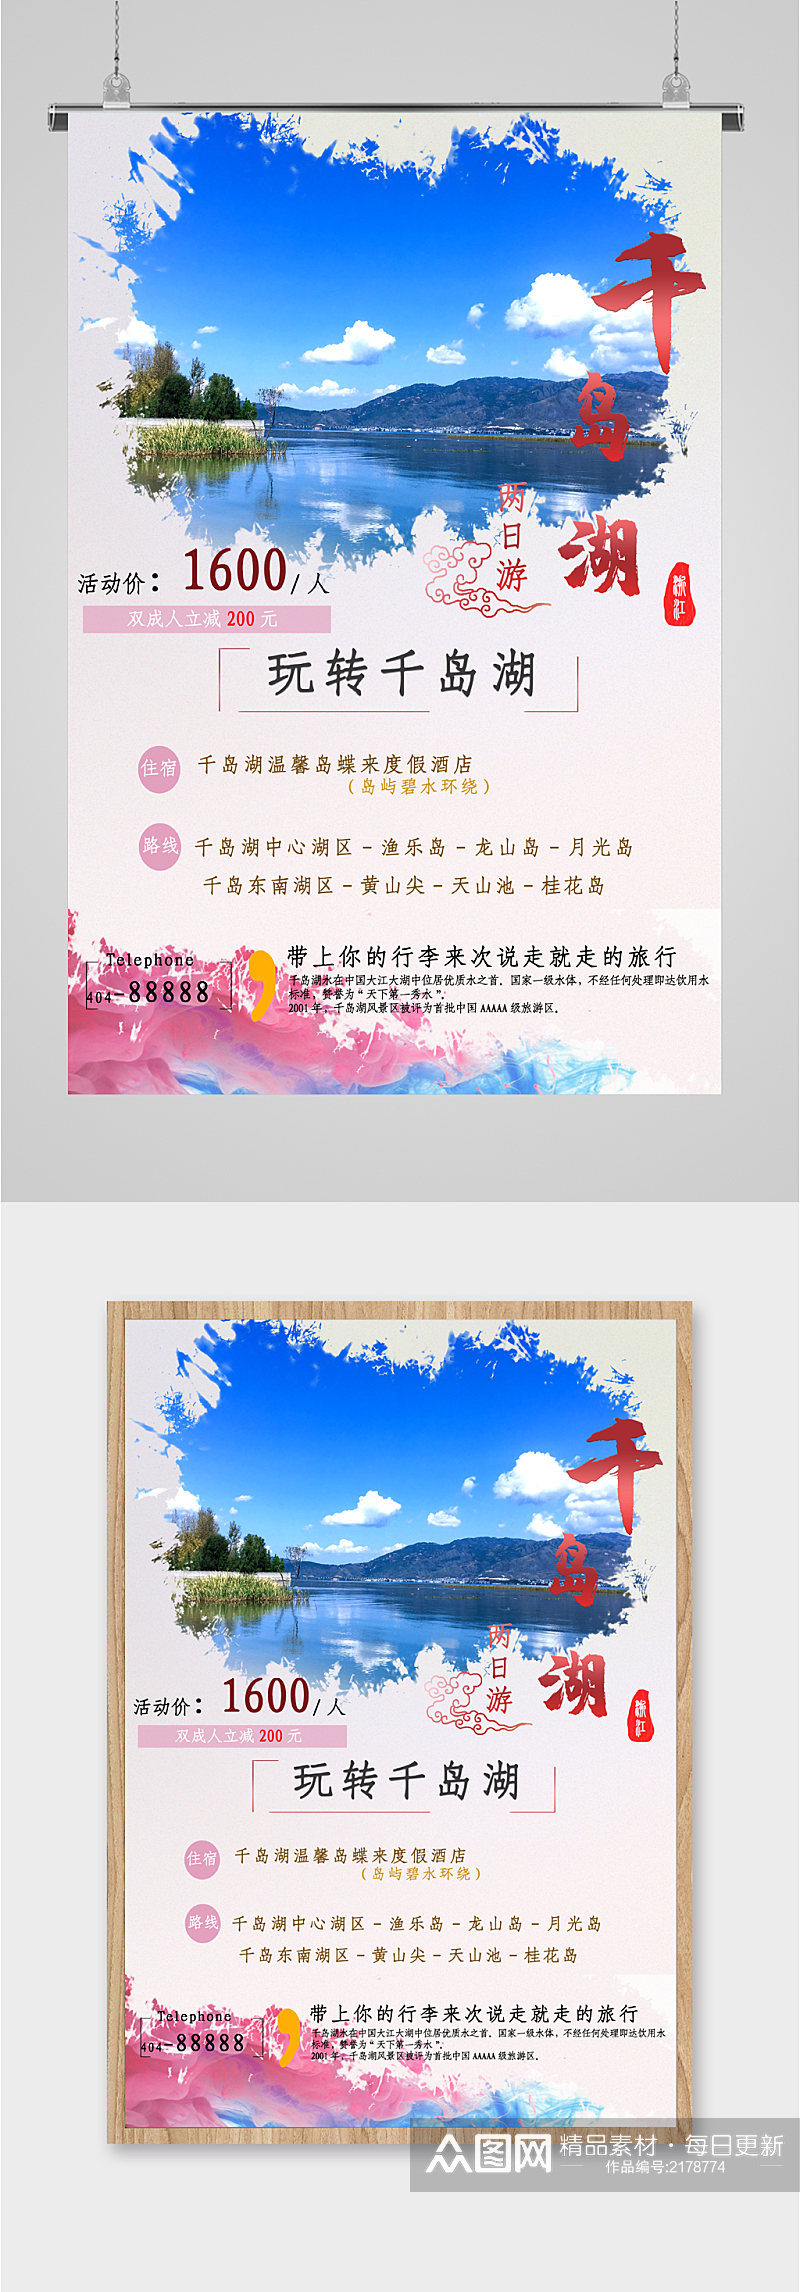 千岛湖风景旅游海报素材